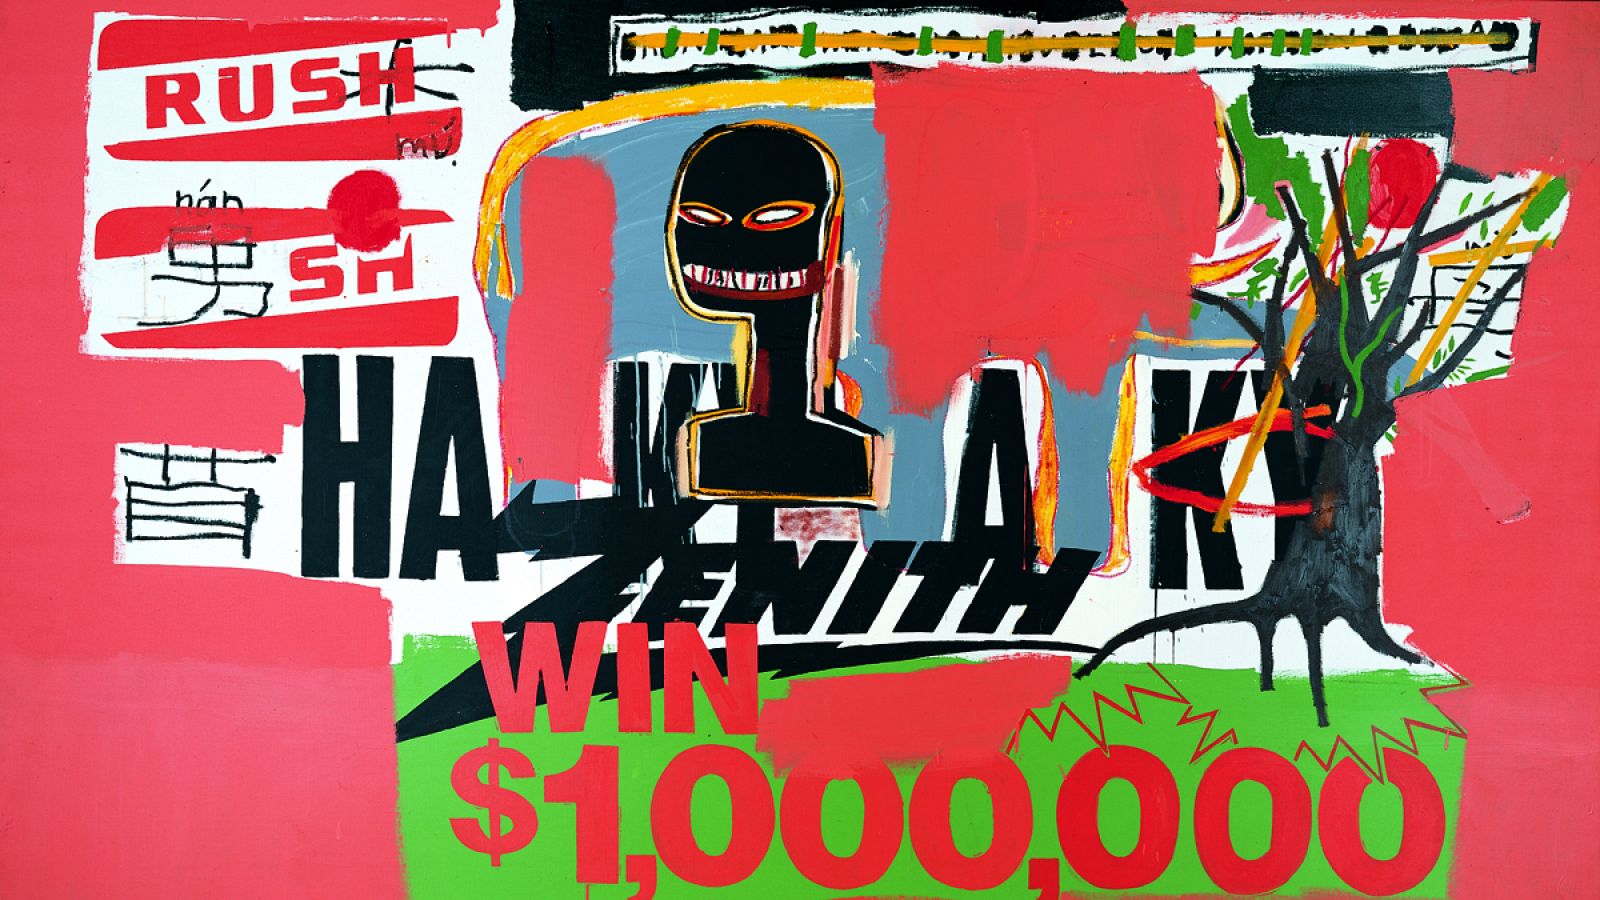 Jean-Michel Basquiat y Andy Warhol. 'Gana 1.000.000 de dólares (Win $ 1'000'000)', 1984. 
Colección Bischofberger, Suiza.